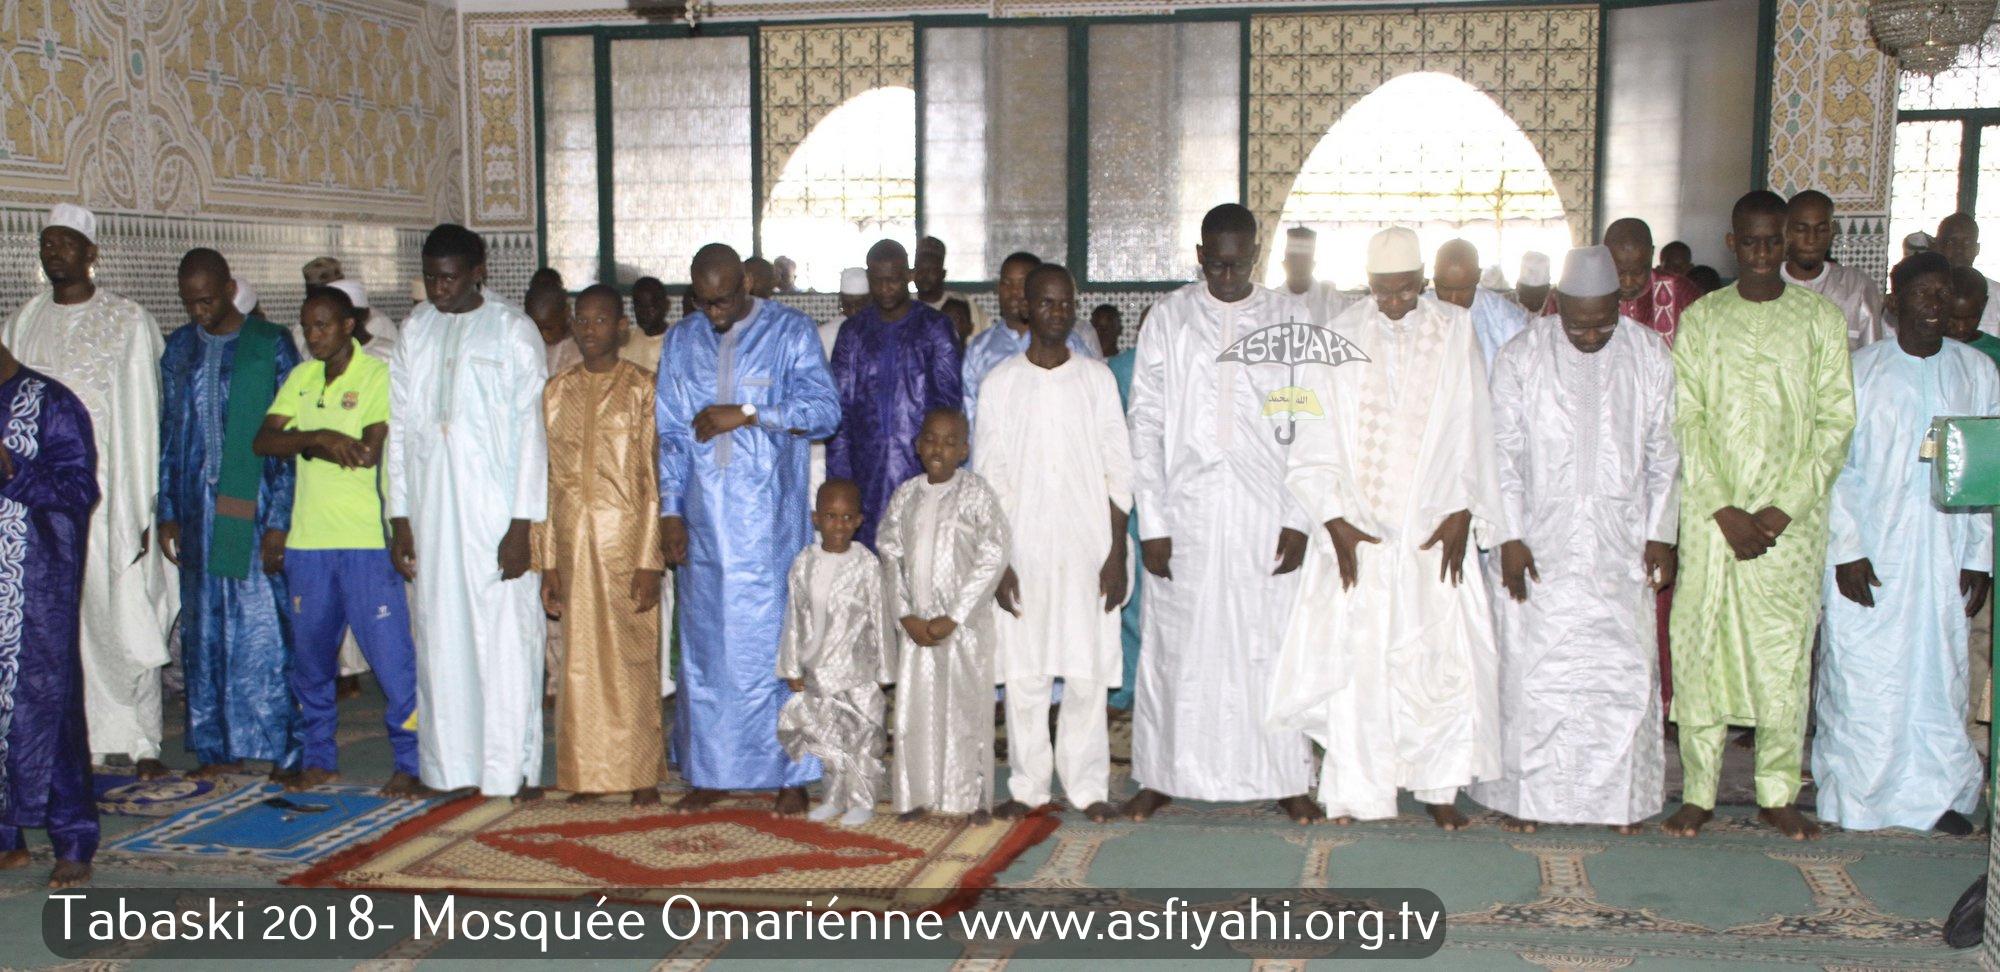 PHOTOS - TABASKI 2018 - Les Images de la Priere de la Tabaski 2018 à la Mosquée Omarienne de Dakar